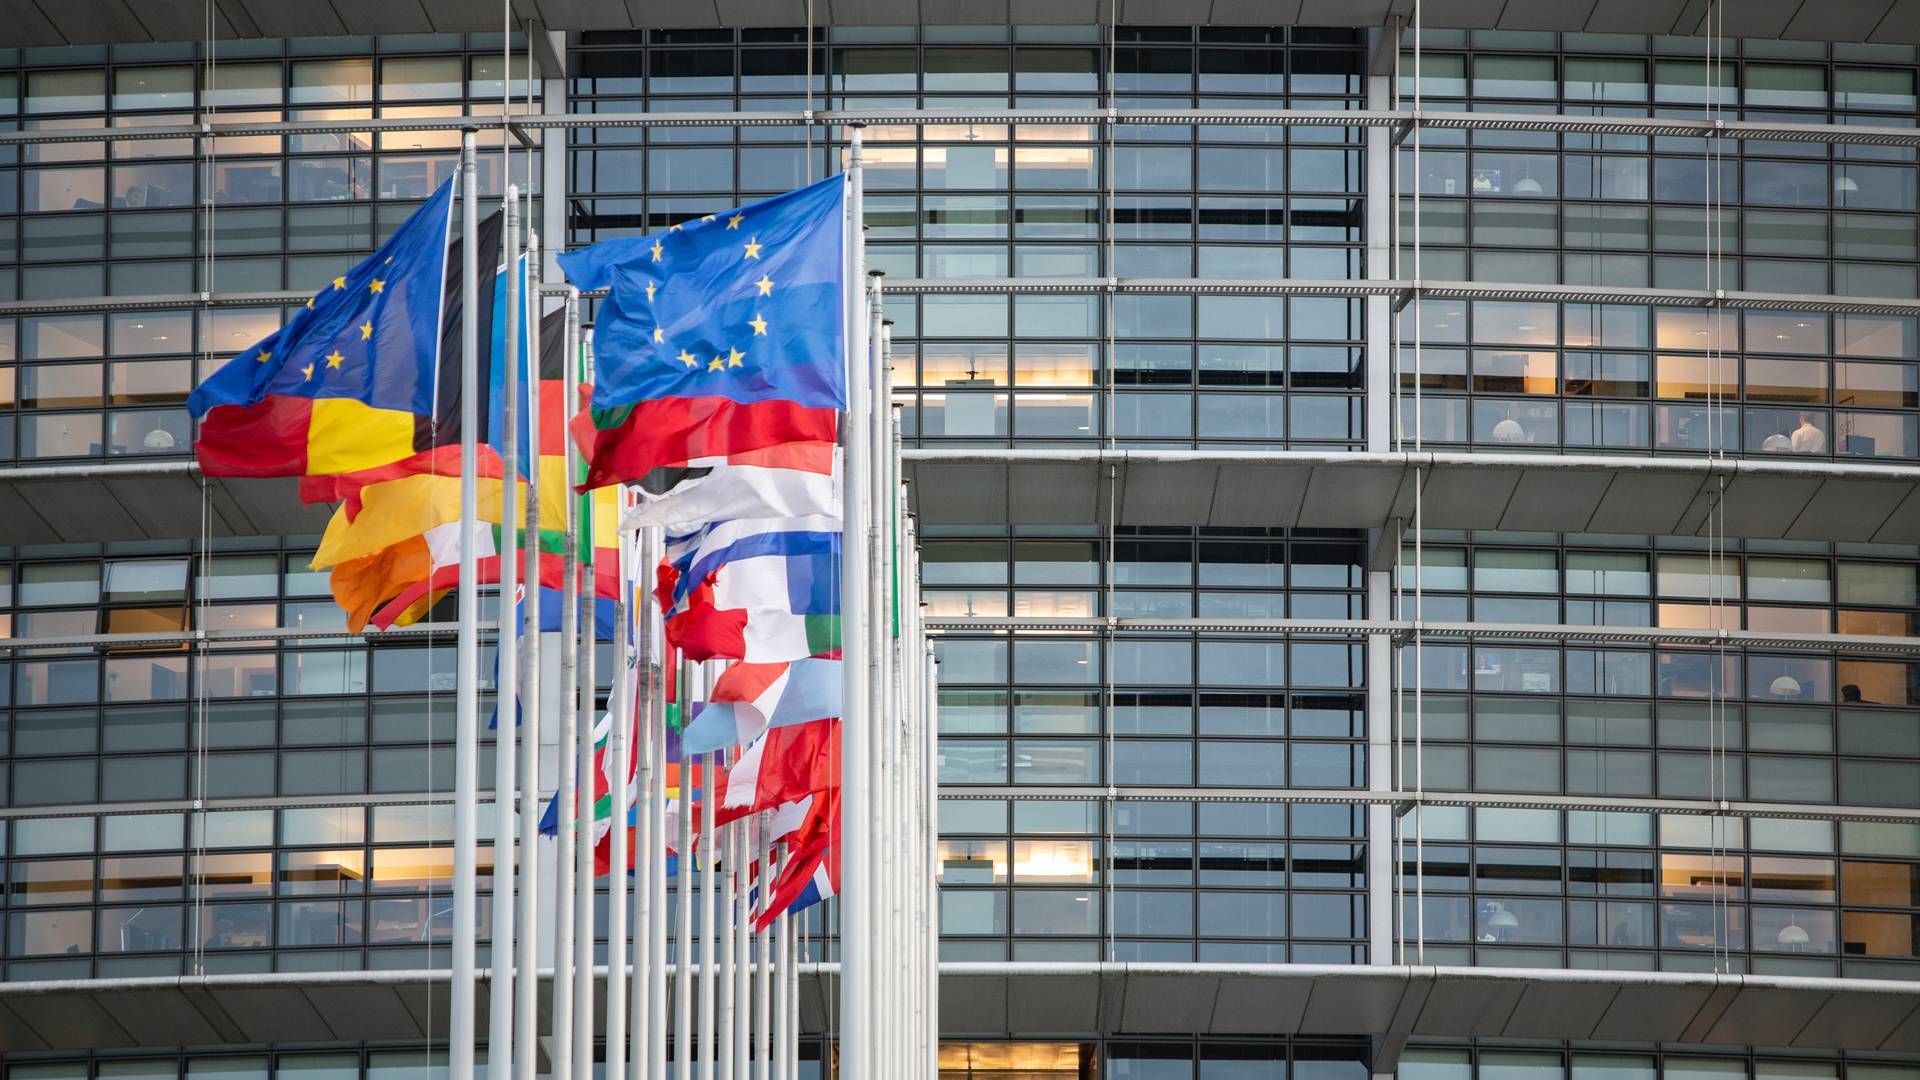 KI-REGULERING: EU-parlamentarikere har godkjent et forslag om omfattende regulering av KI. | Foto: Jens Hartmann